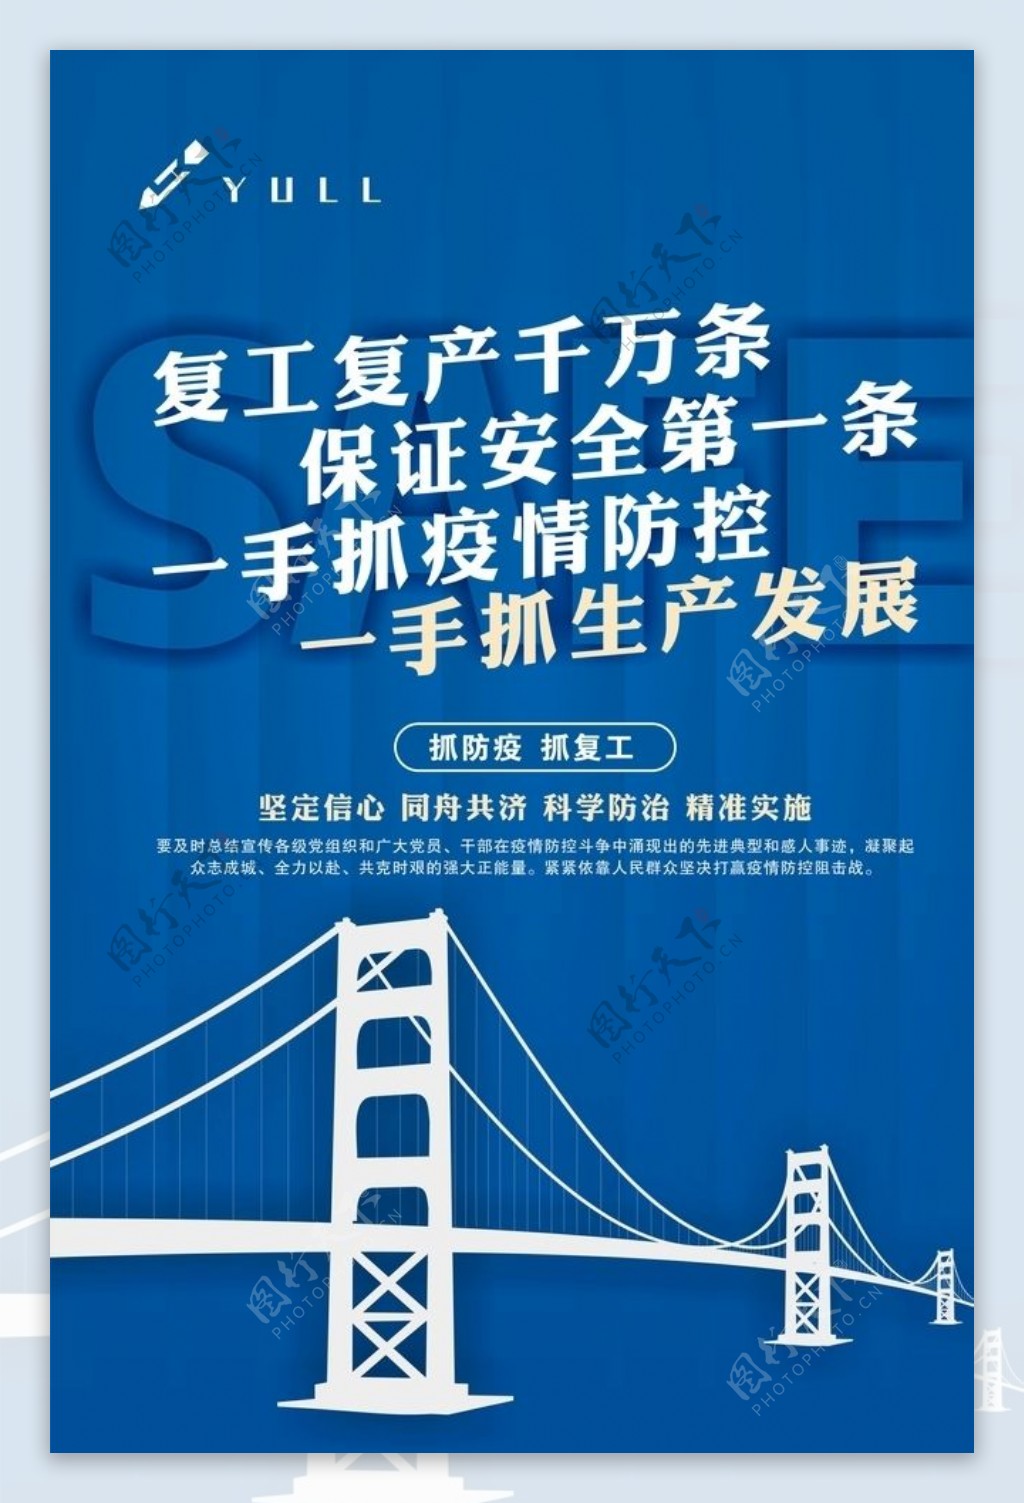 桥梁工程复工宣传海报